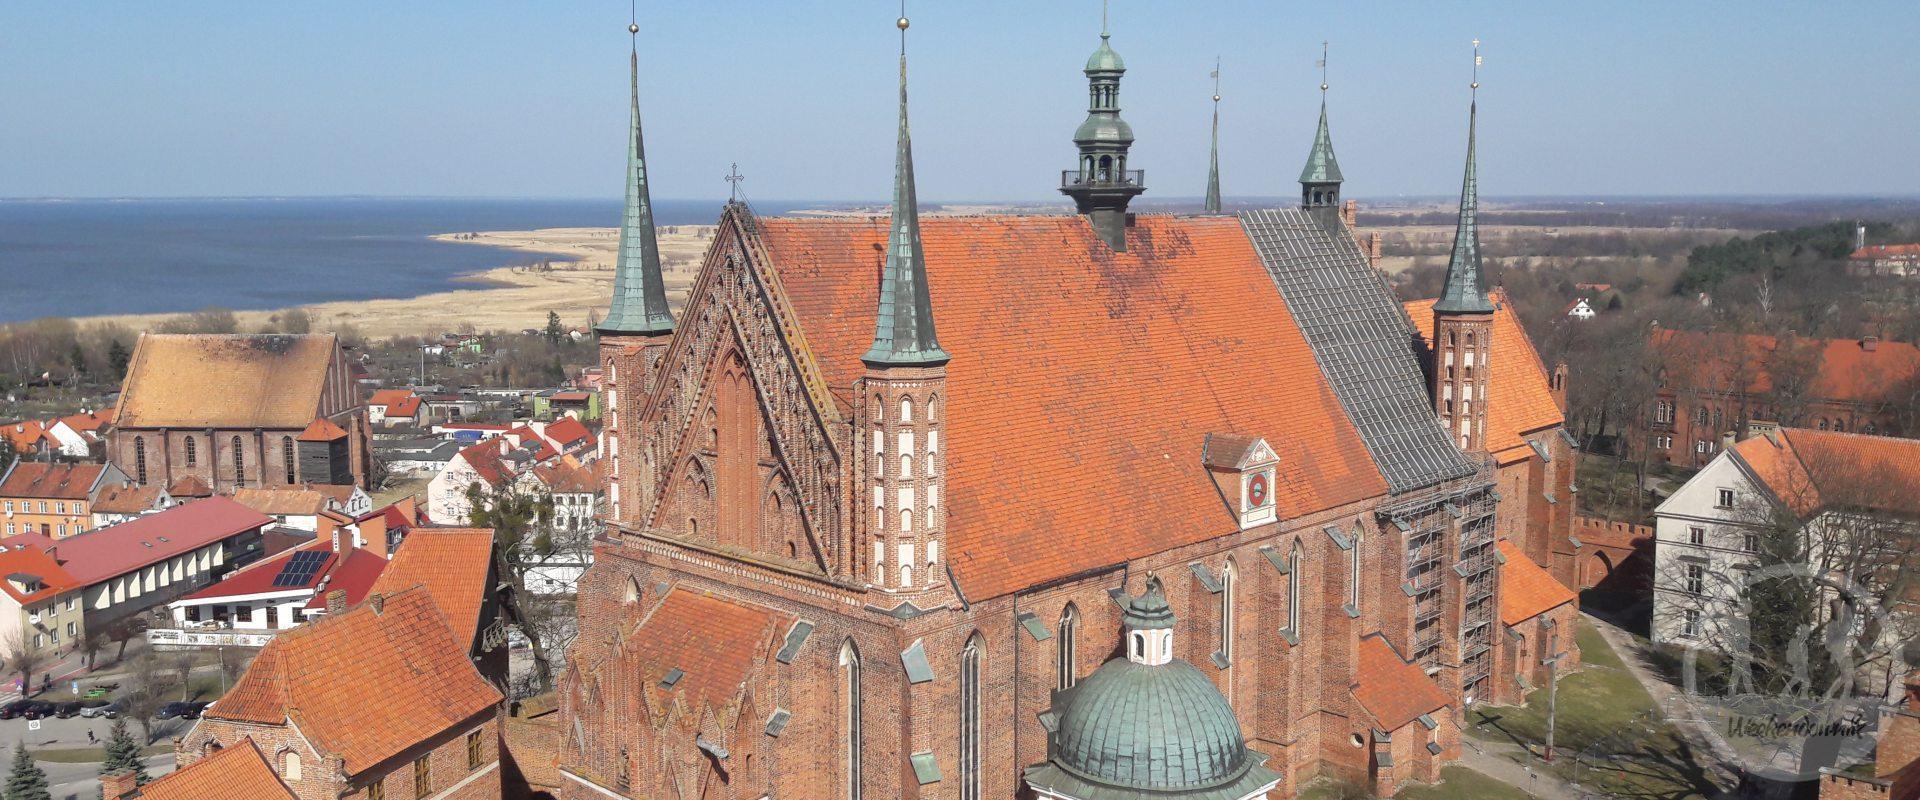 Frombork - Katedra